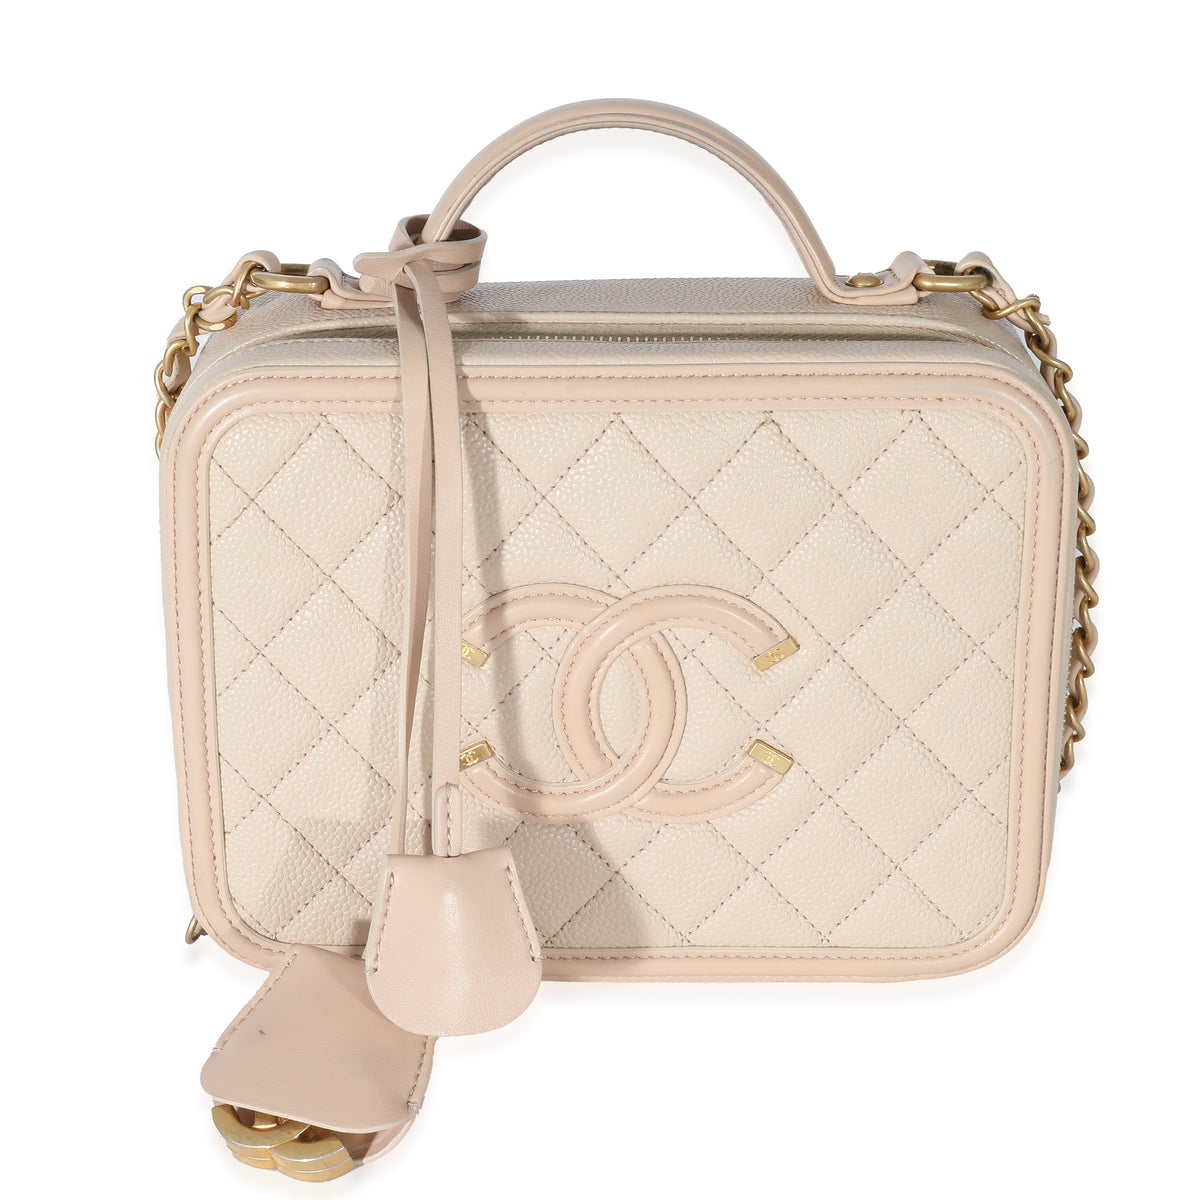 Chanel Vanity Bag Filigree Of White